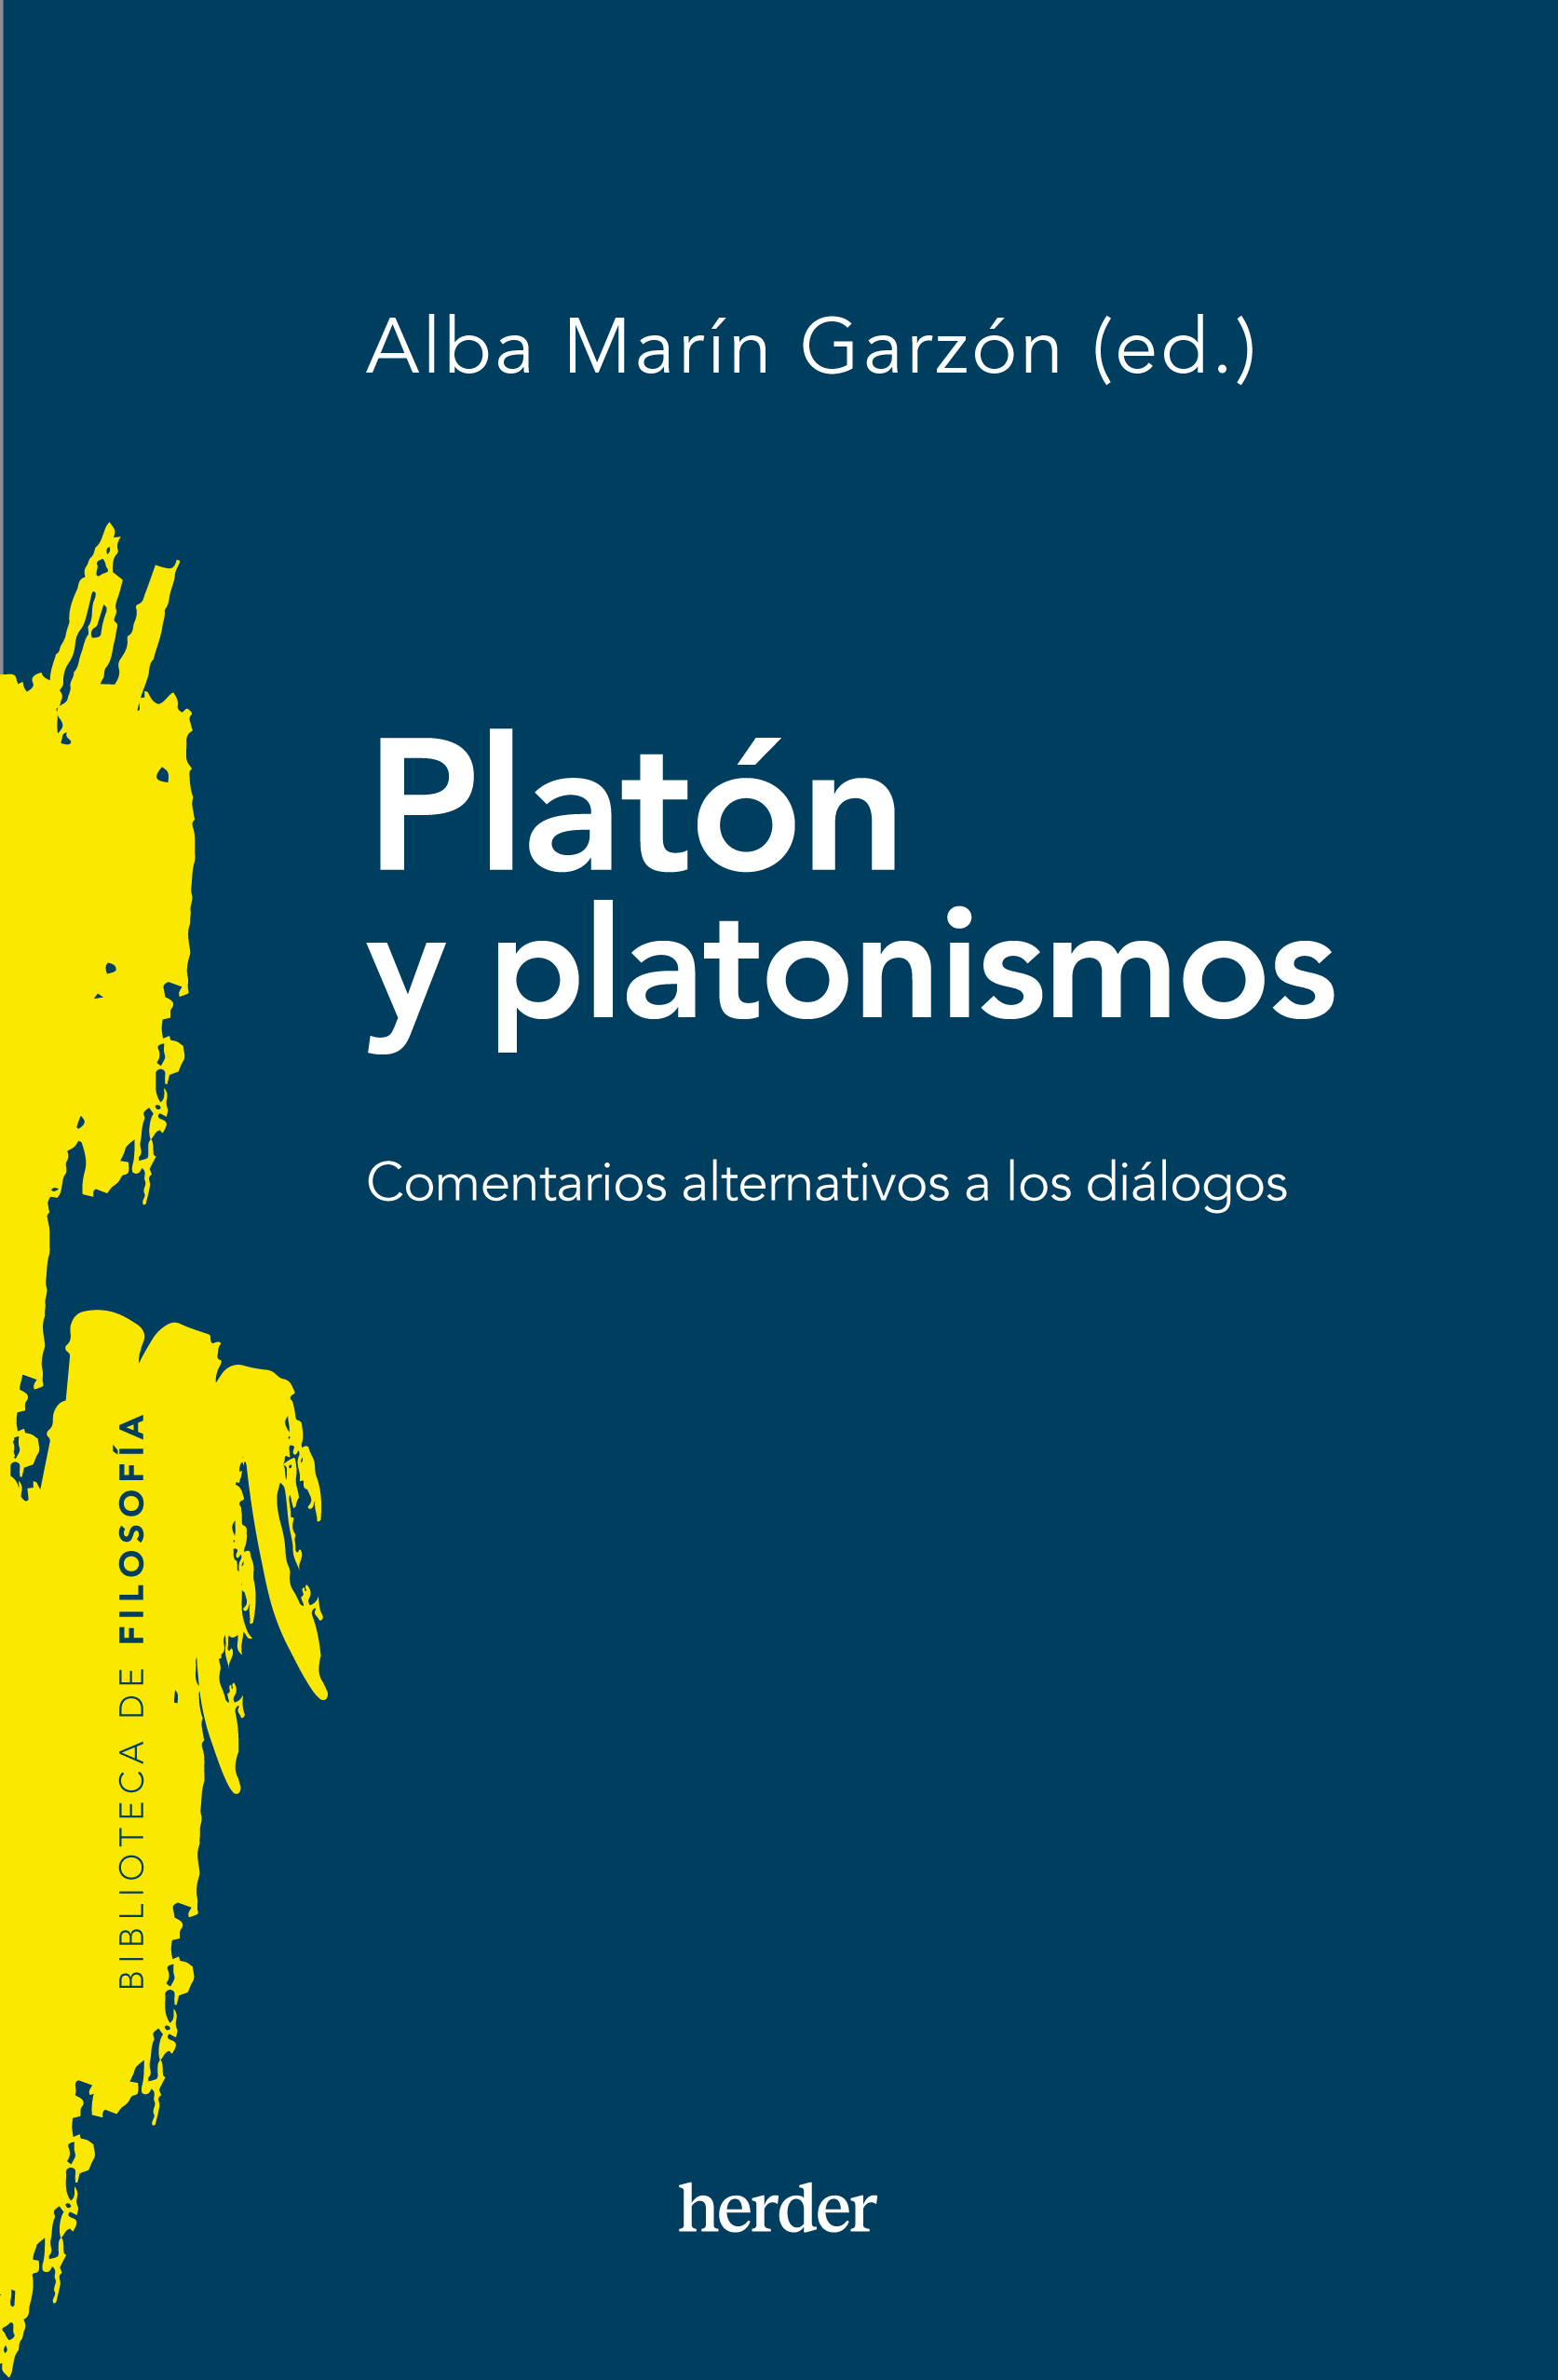 Platón y platonismos   «Comentarios alternativos a los diálogos»